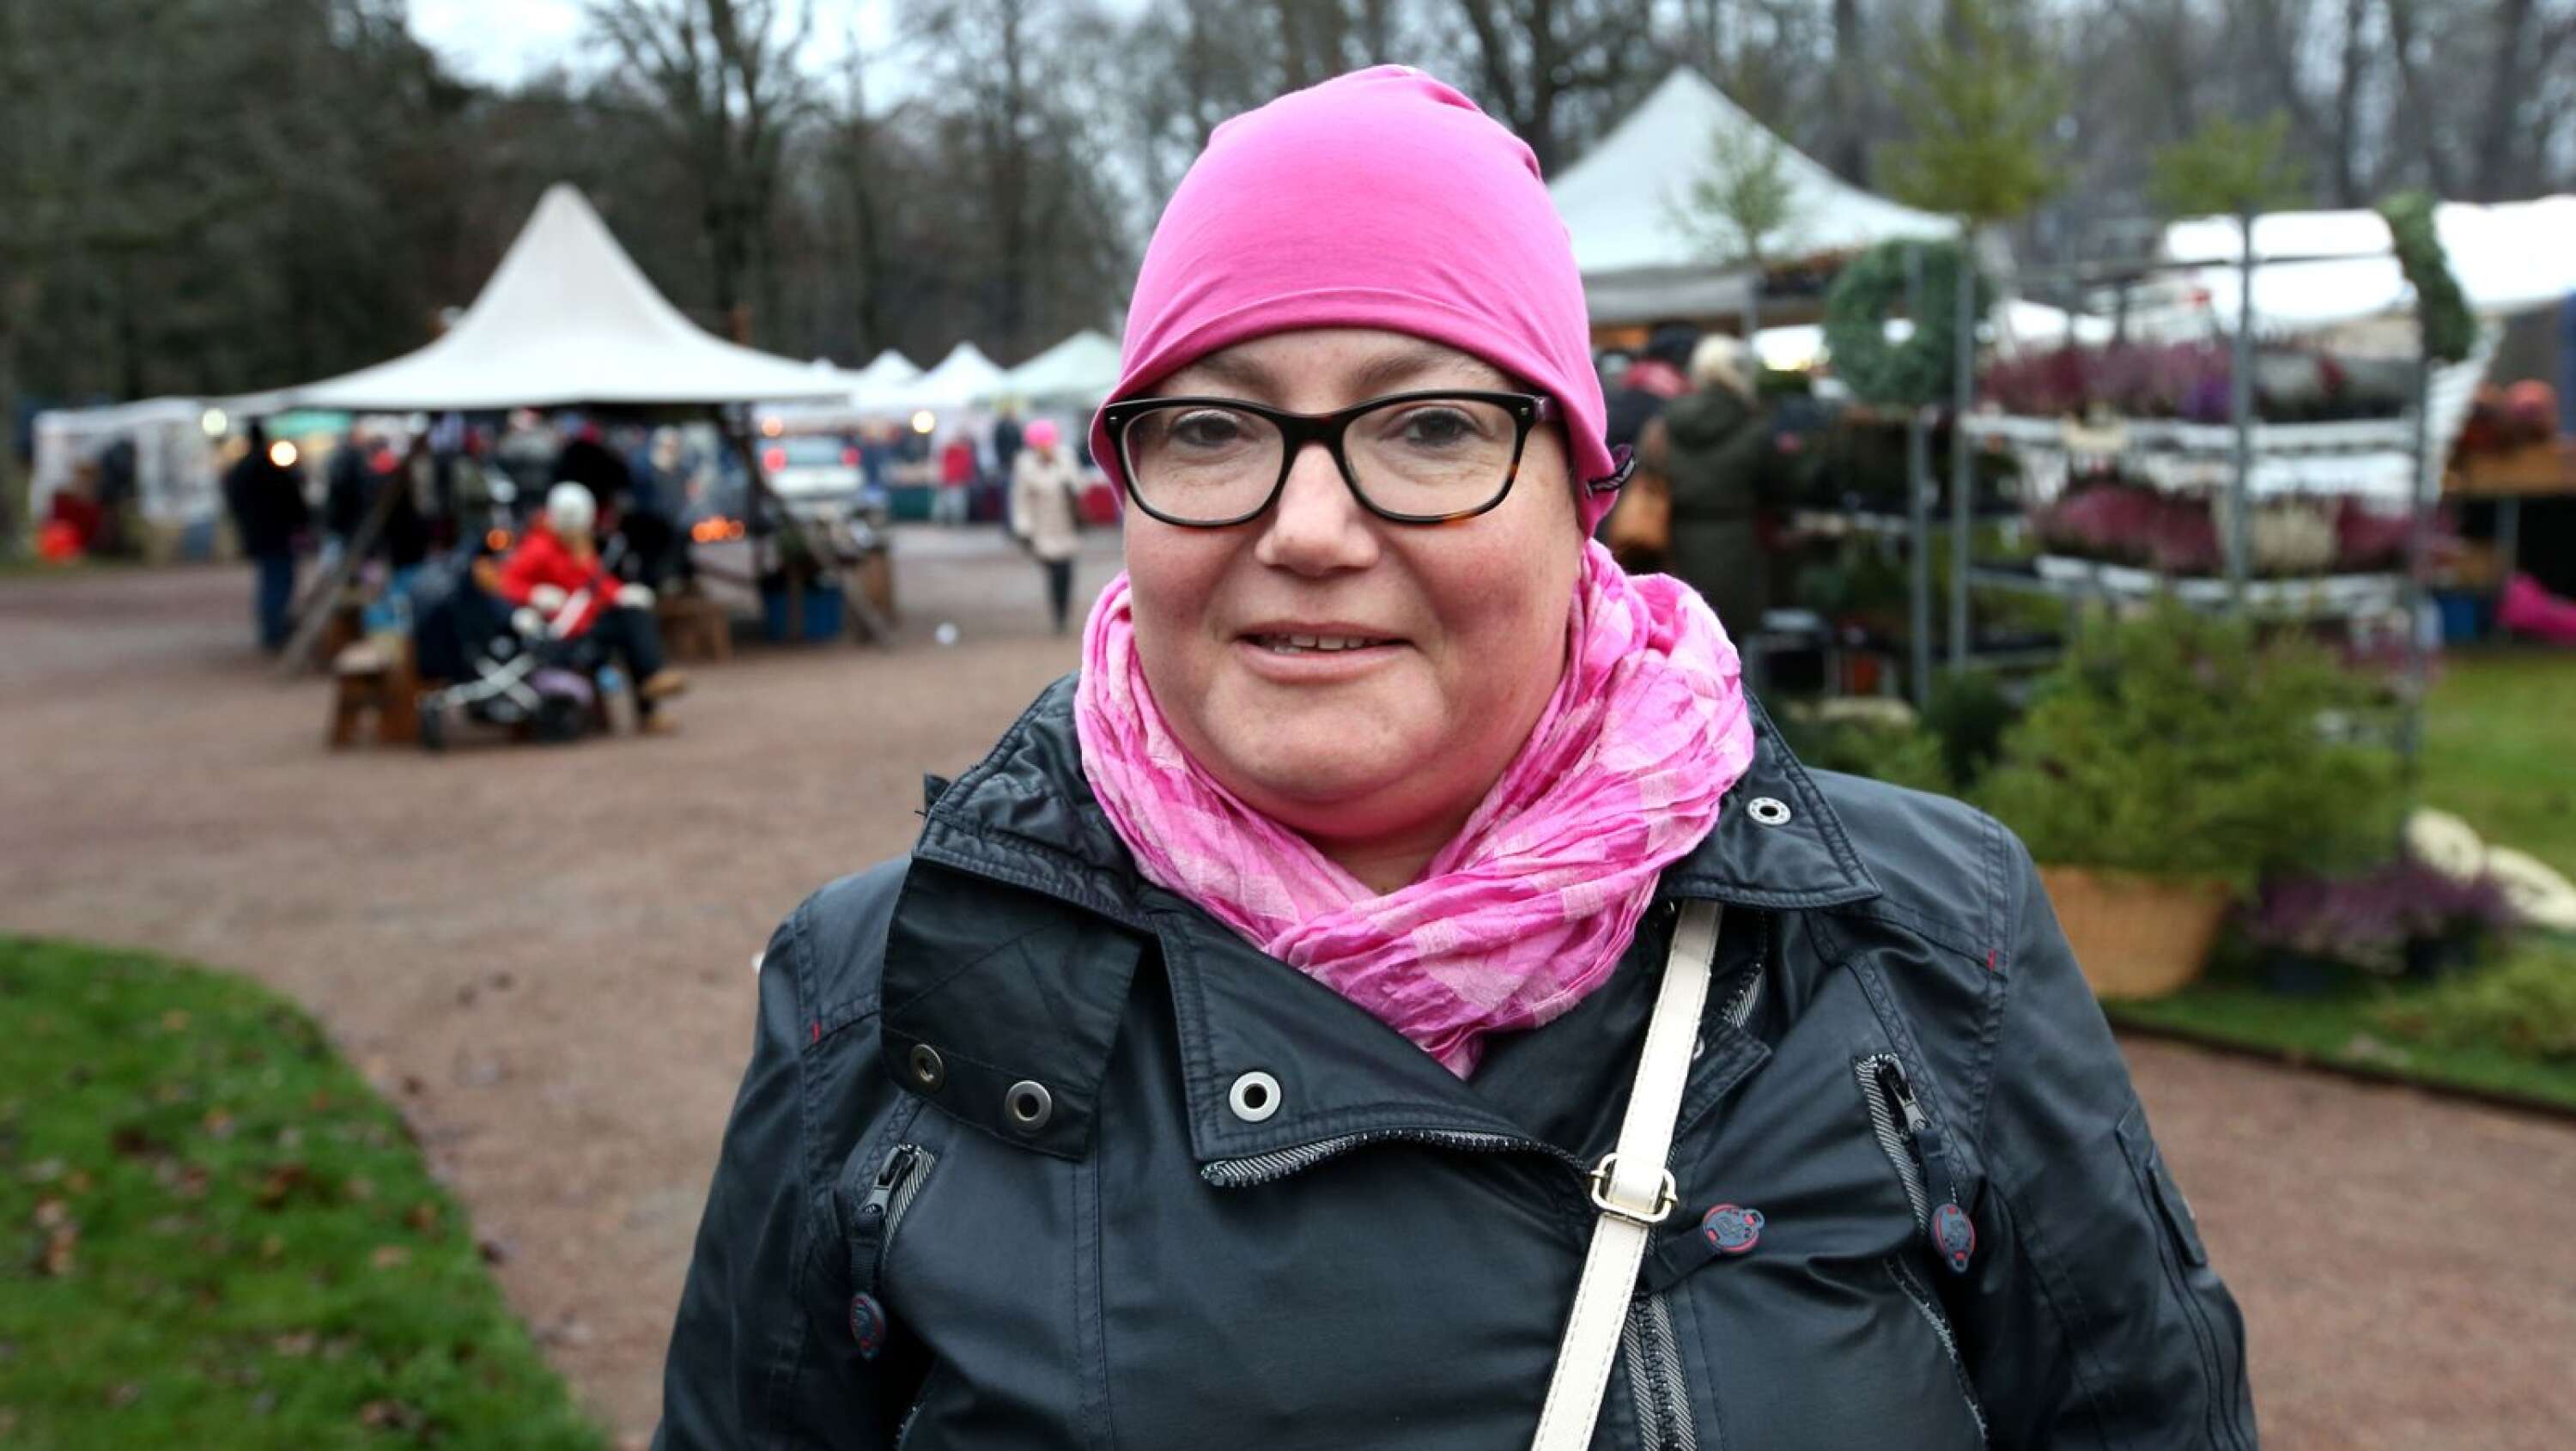 Emma Lindqvist, 42 år, Nödinge
- Inspiration tar jag med mig. Och än så länge har jag köpt ett hjärta i fårull att hänga upp. Vi har inte kommit till maten än, men det blir kanske lite godis.